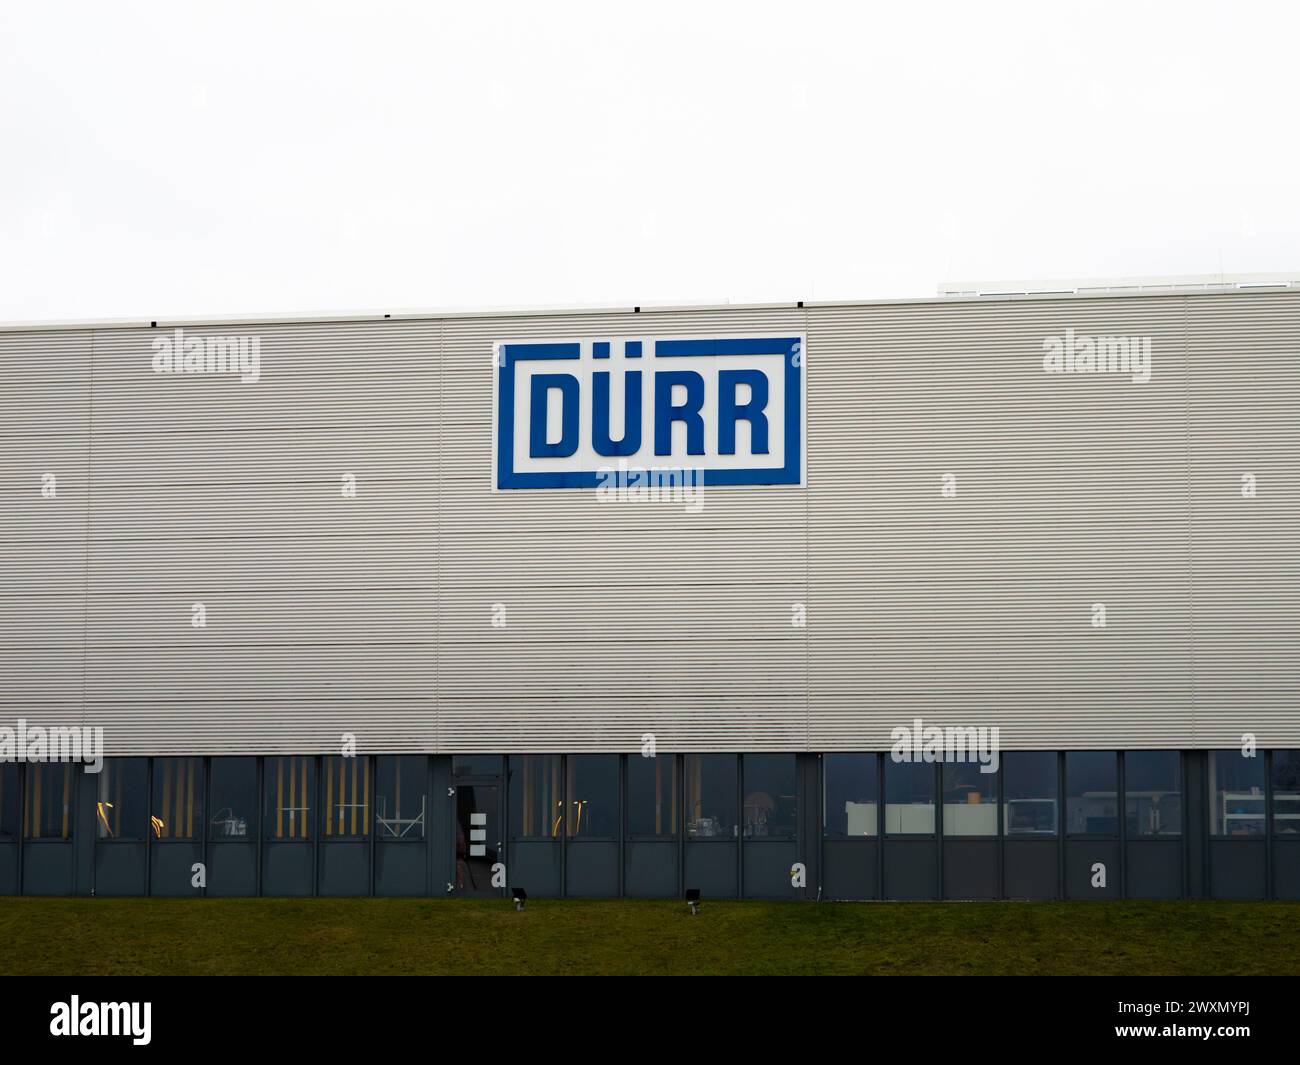 DÜRR-Logo des deutschen Maschinenbauunternehmens auf einem Industriegebäude. Das Geschäft ist der Anlagenbau für die Autofiliale. Stockfoto